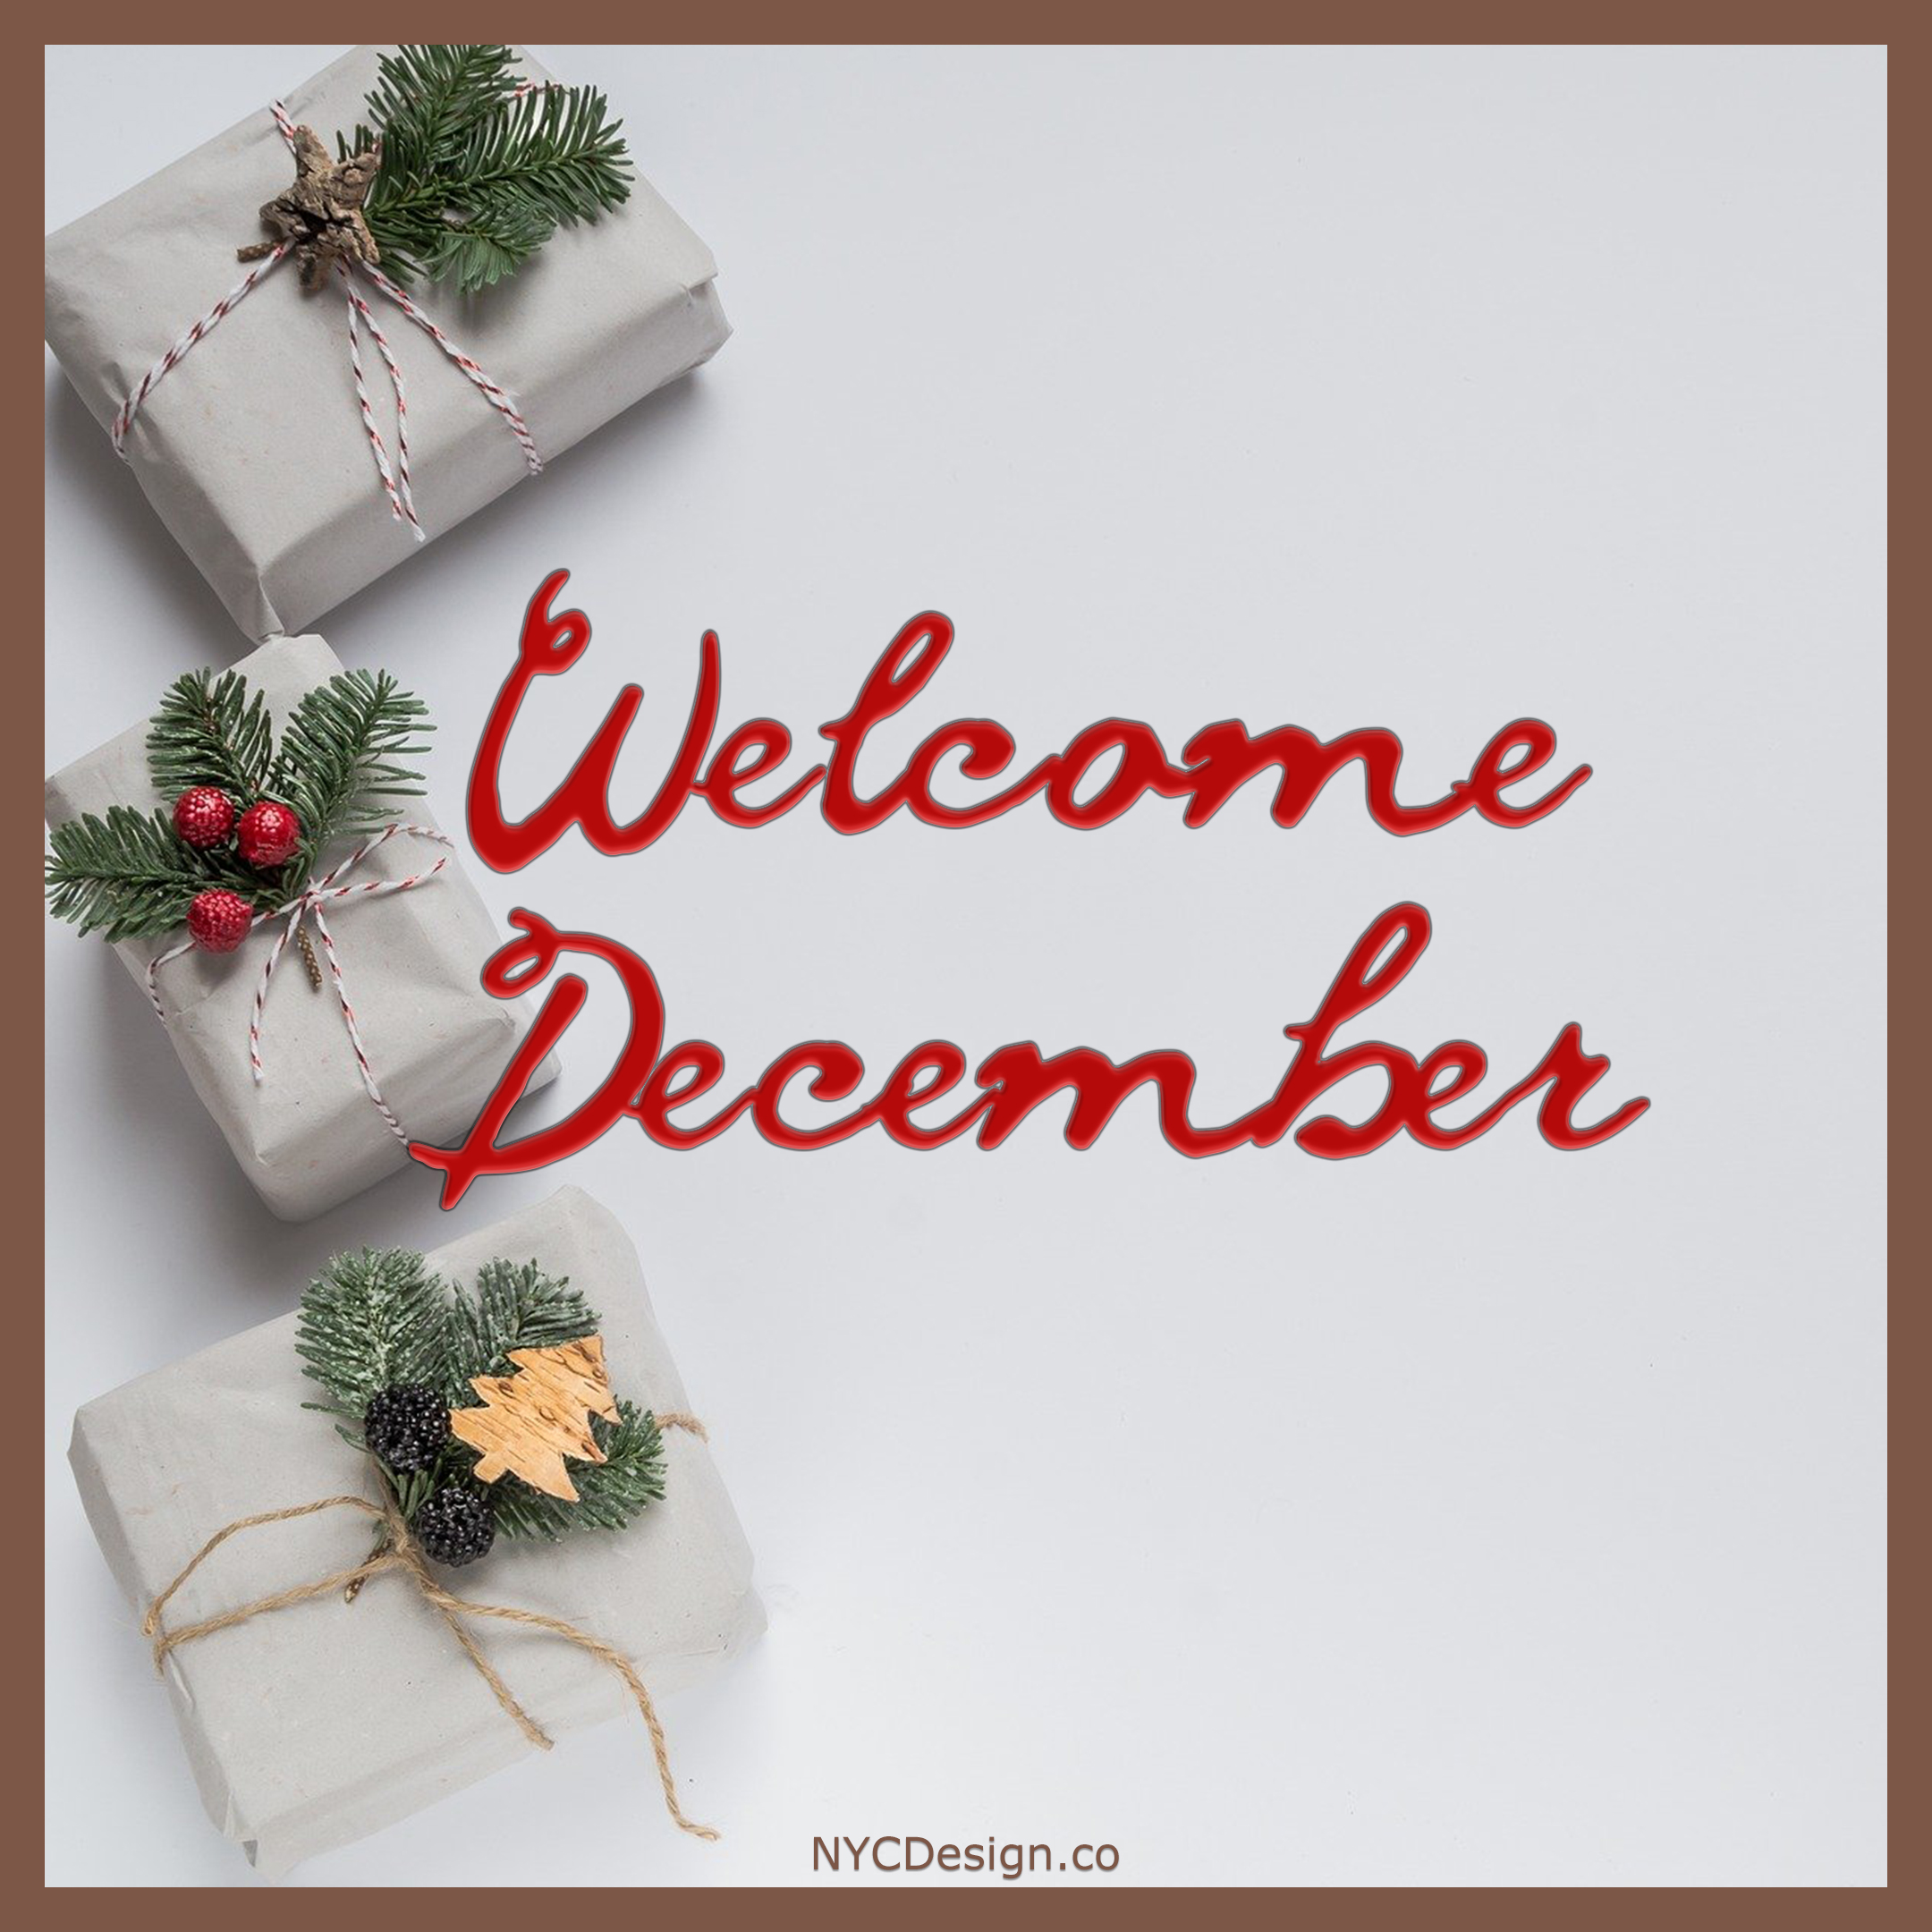 December Images for Instagram and Facebook